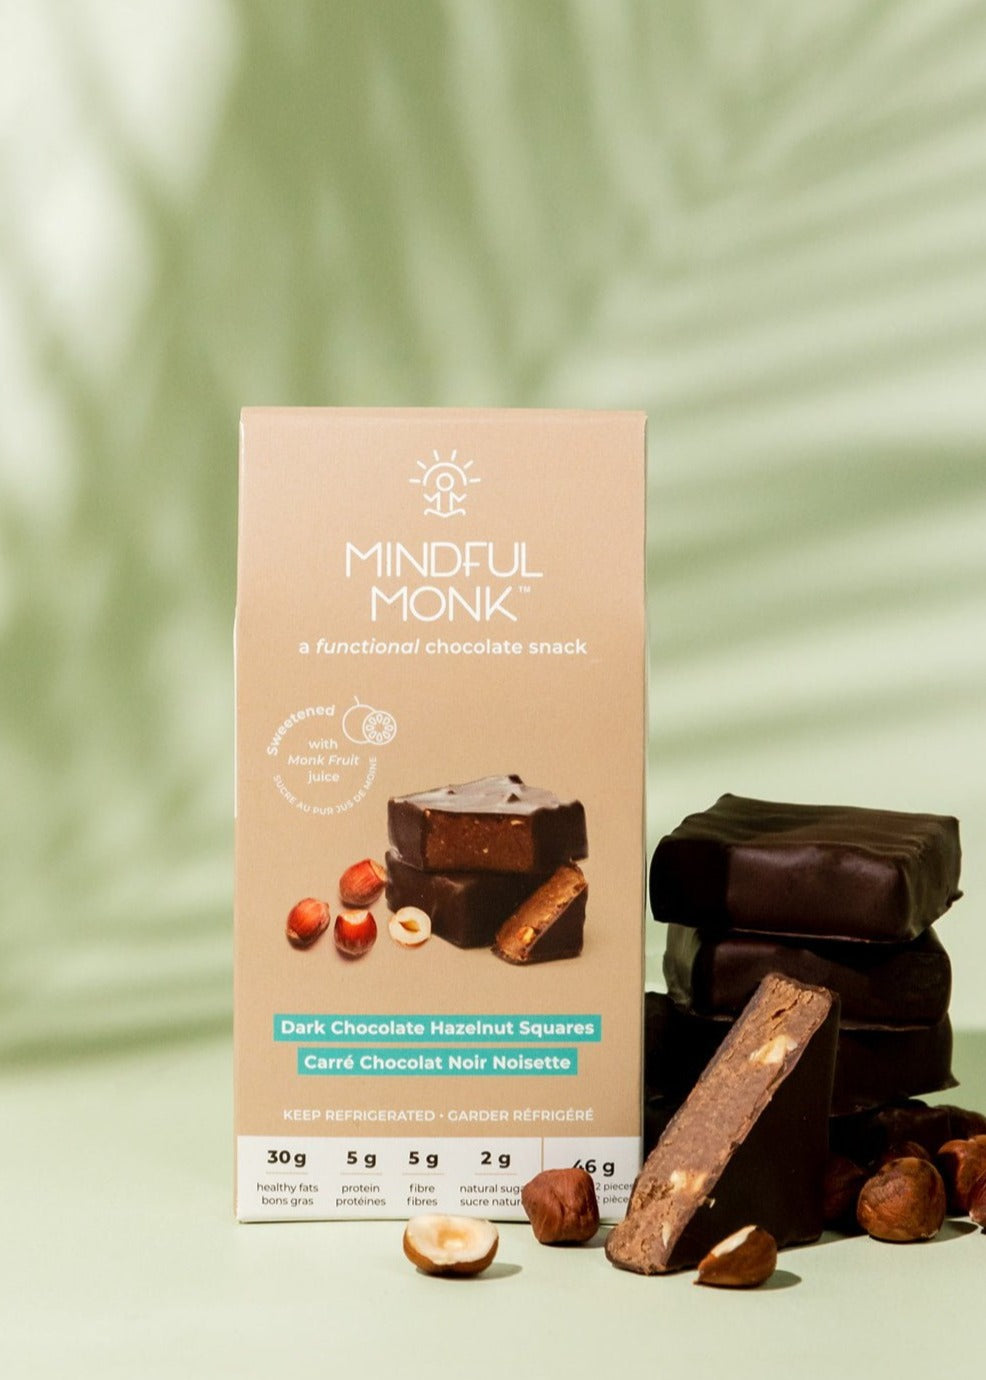 Dark Chocolate Hazelnut Squares sweetened with Monk Fruit – Multi-Pack - Mindful Monk